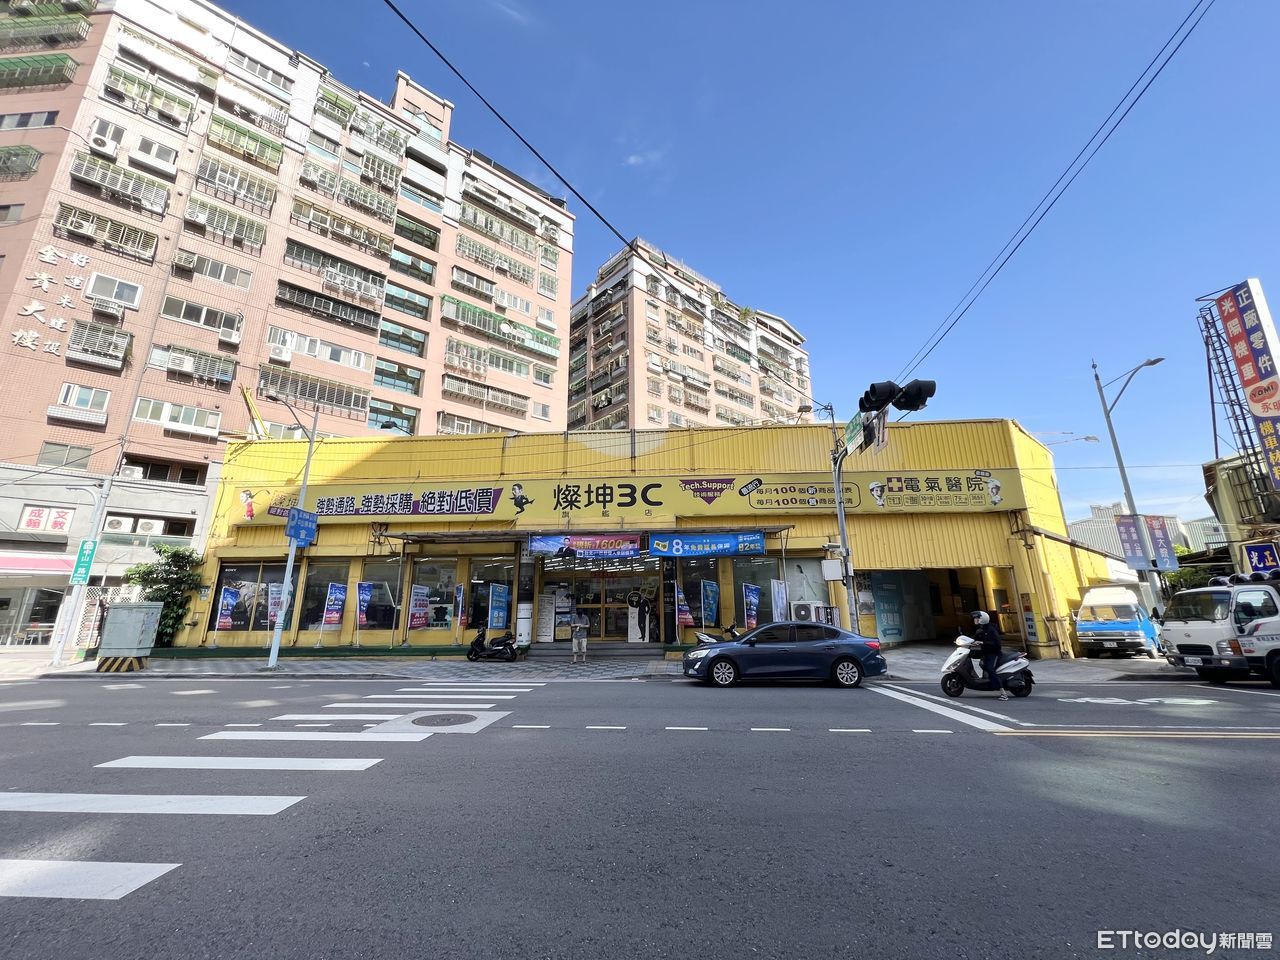 燦坤蘆洲旗艦店將改建　地主曝光「三和麥當勞地也是他的」